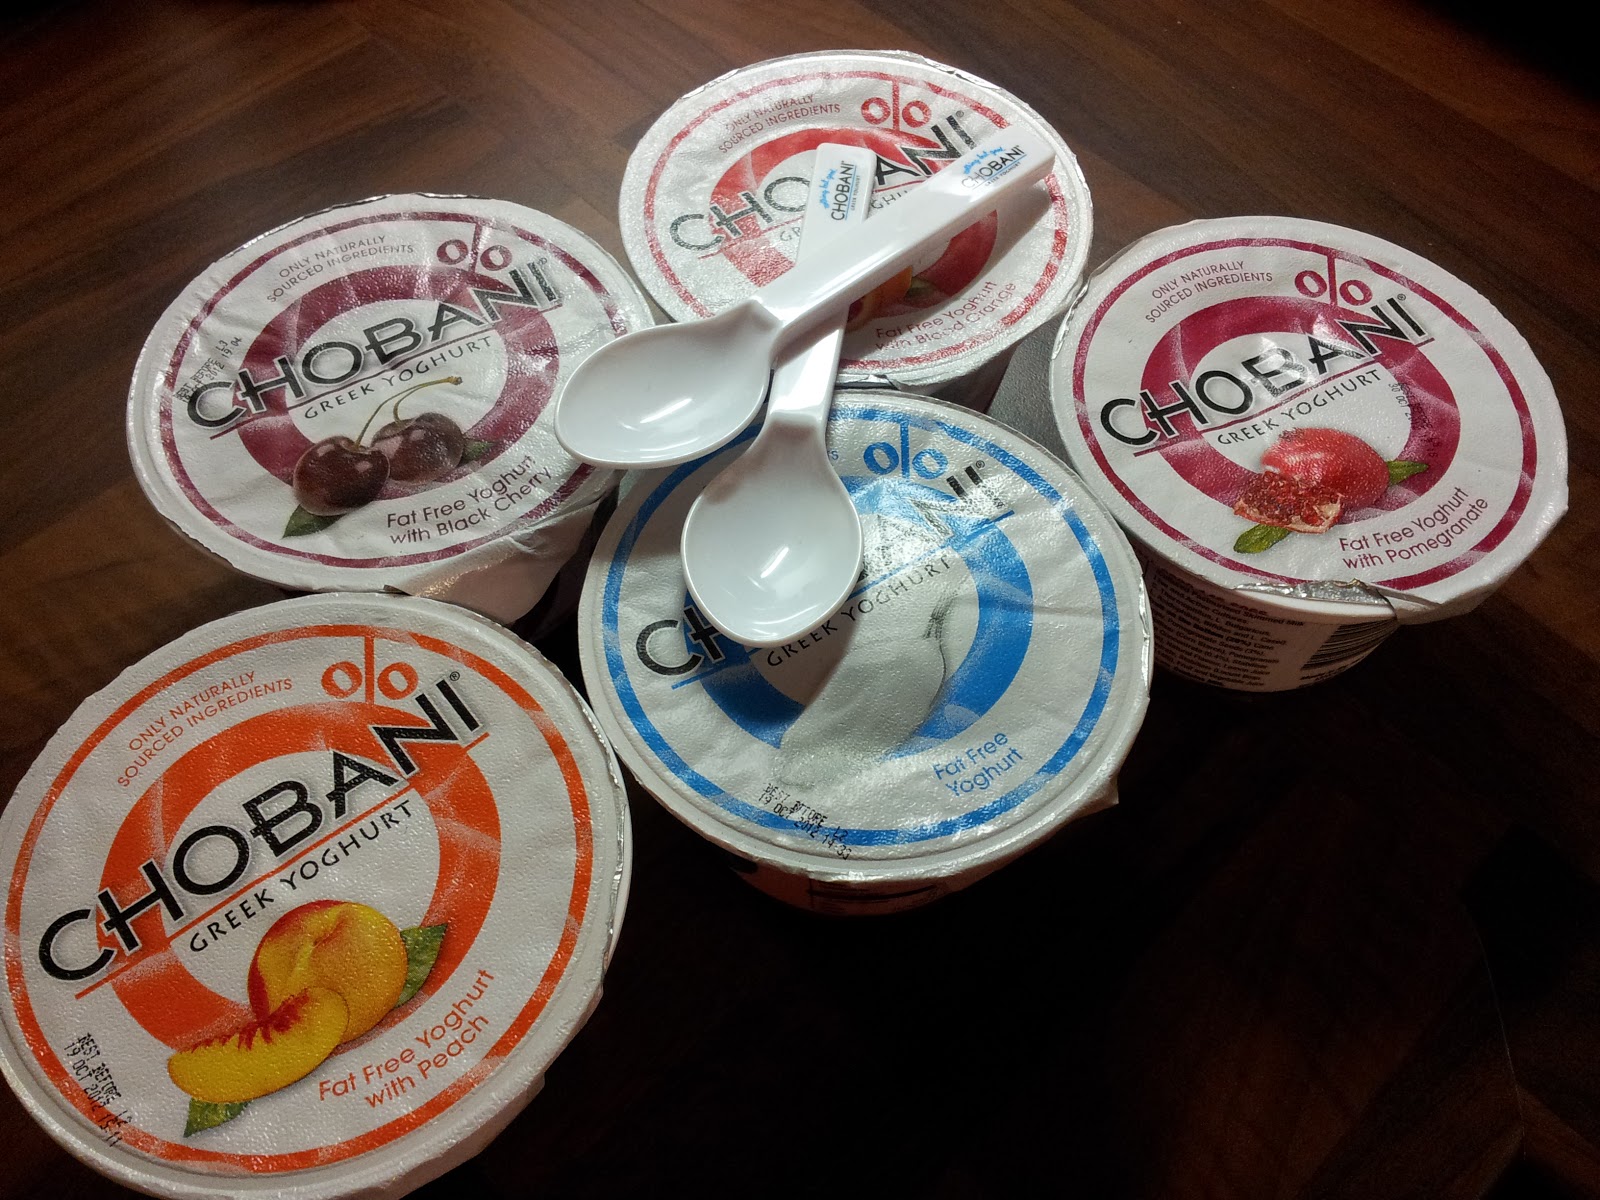 Chobani Greek Yogurt | This Is Life